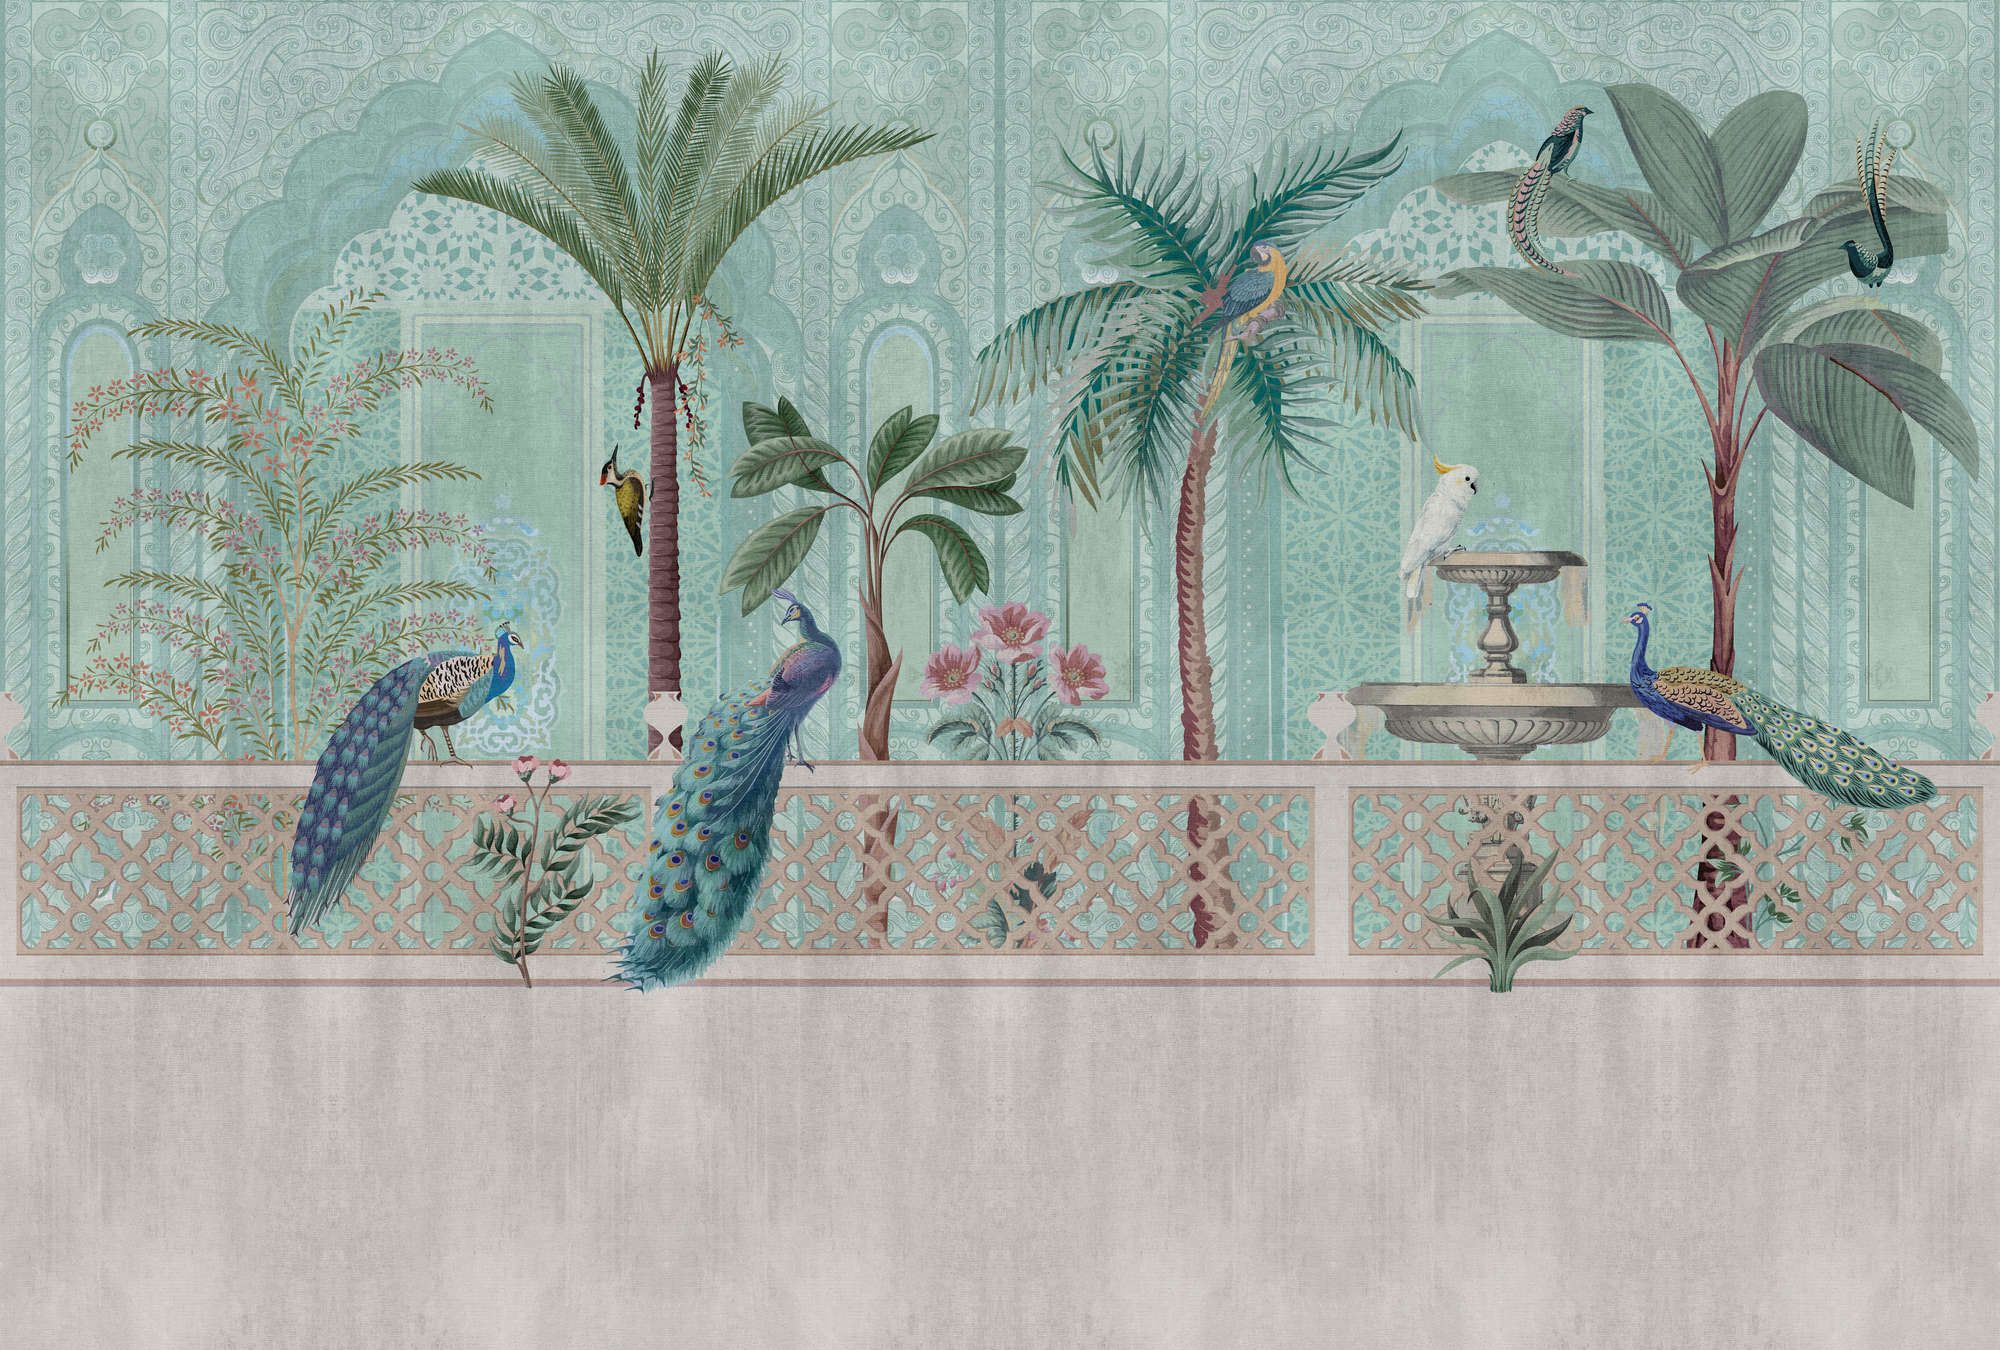             Fotomural »pavo« - Pájaros, palmeras y fuentes - Verde, azul con estructura de tapiz | Material sin tejer liso, ligeramente nacarado
        